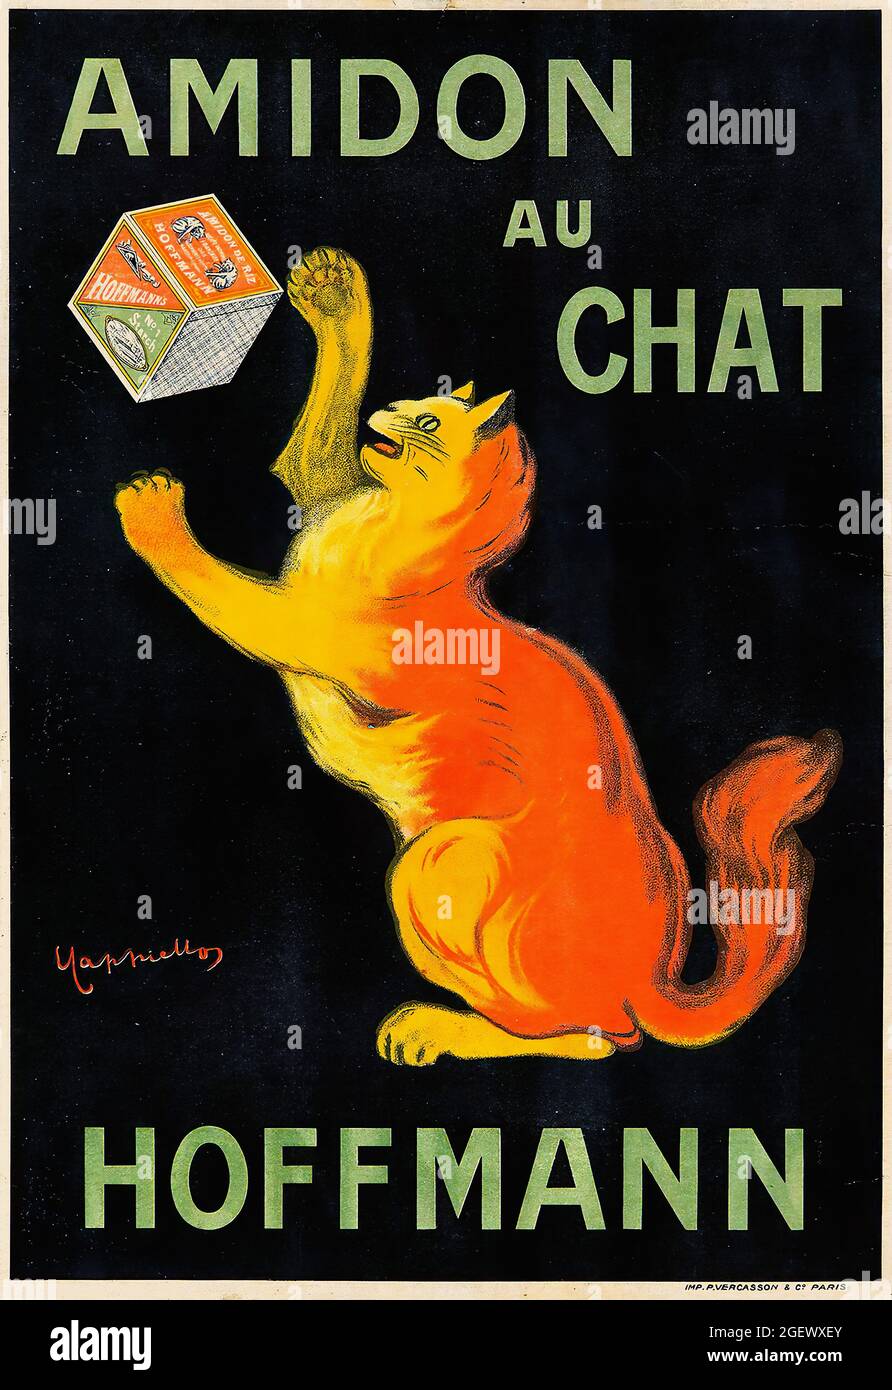 Amidon au Chat - Hoffmann - affiche ancienne - Leonetto Cappiello. Affiche publicitaire, 1903. Code art. Banque D'Images